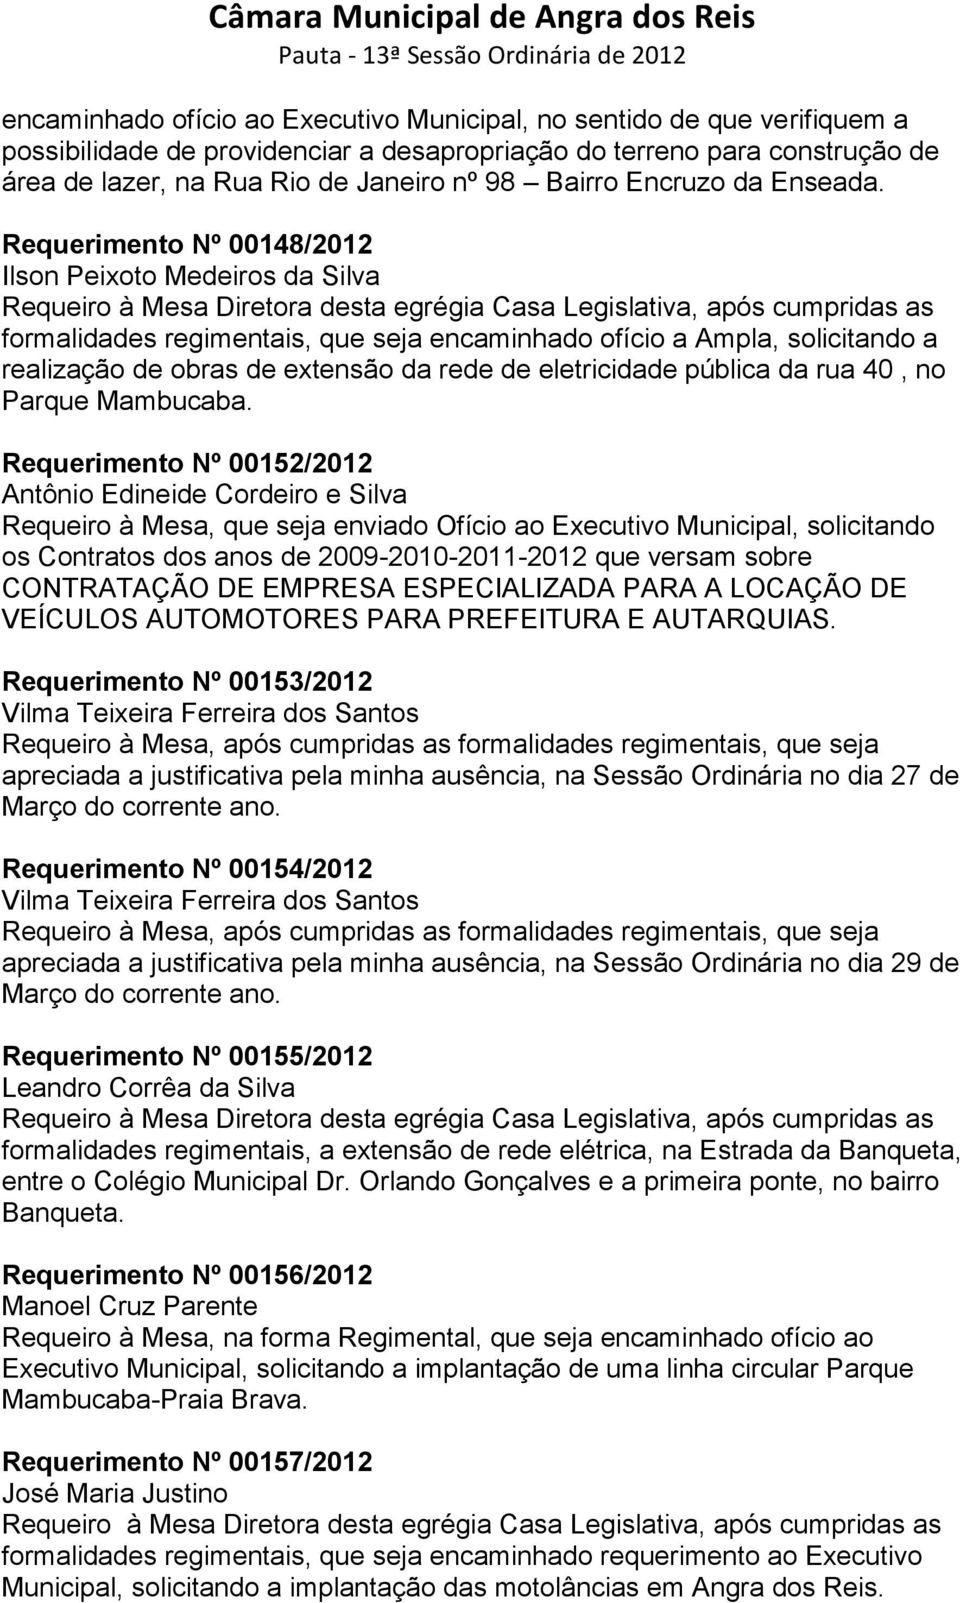 Requerimento Nº 00148/2012 Ilson Peixoto Medeiros da Silva formalidades regimentais, que seja encaminhado ofício a Ampla, solicitando a realização de obras de extensão da rede de eletricidade pública